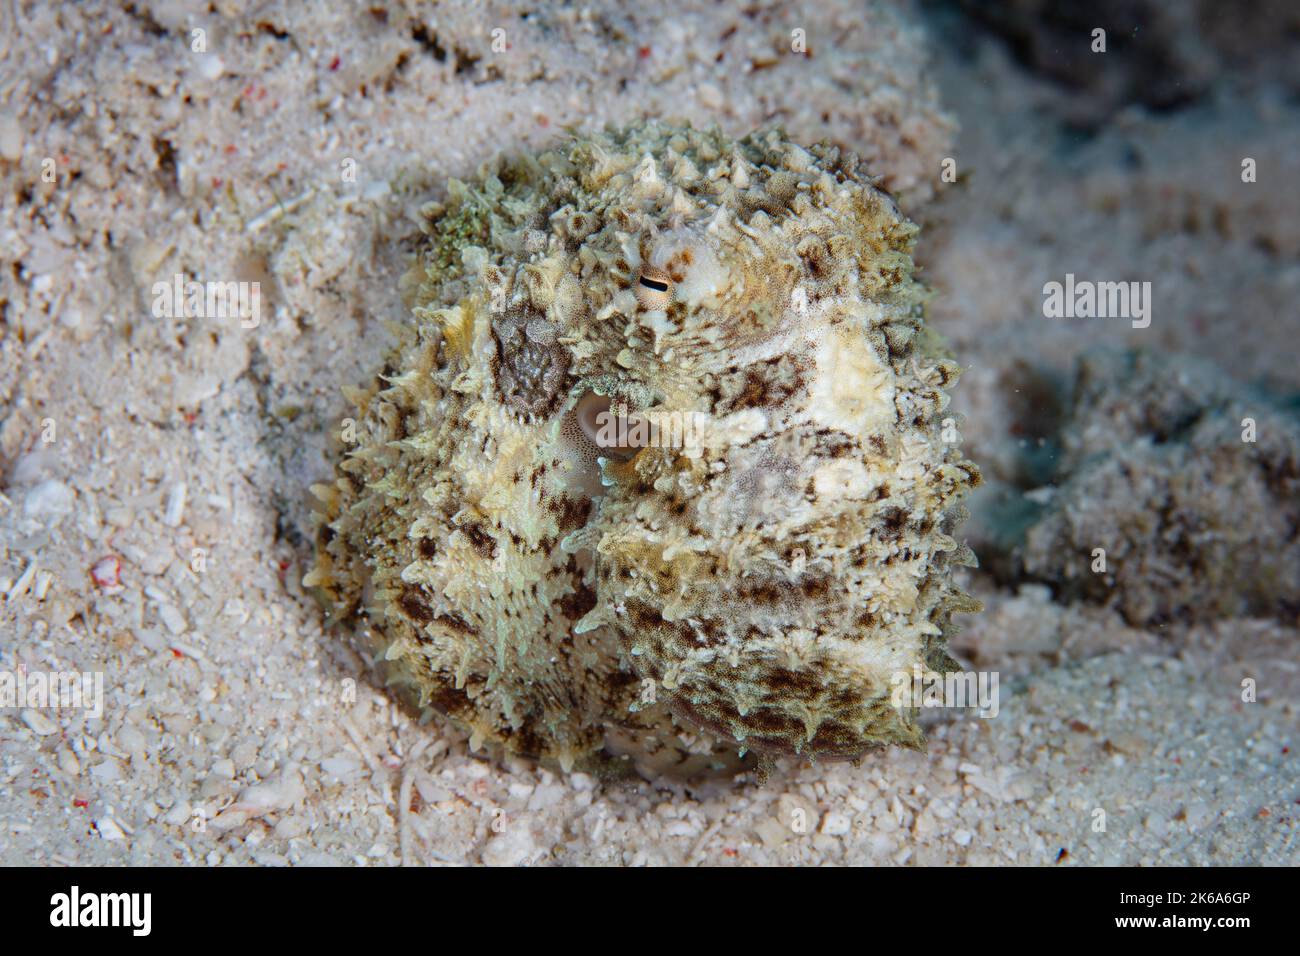 Ein kleiner, gut getarnter Oktopus, Amphiocrake mototi, versteckt sich am Meeresboden in der Nähe von Flores, Indonesien. Diese seltene, indopazifische Art ist giftig. Stockfoto